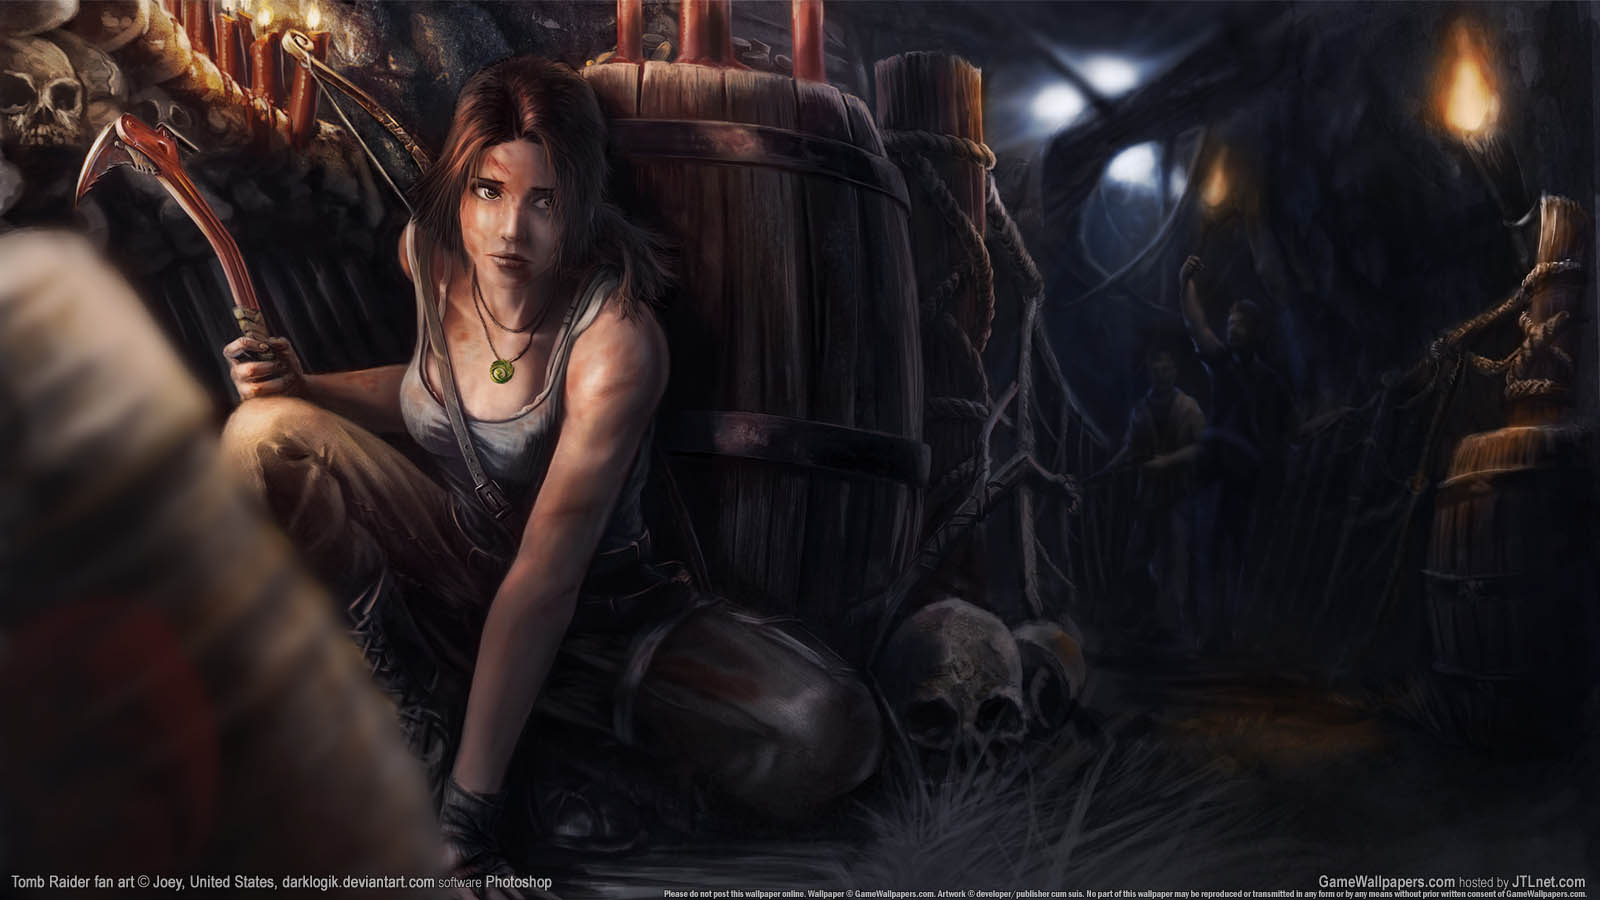 Tomb Raider fan art fond d'cran 03 1600x900